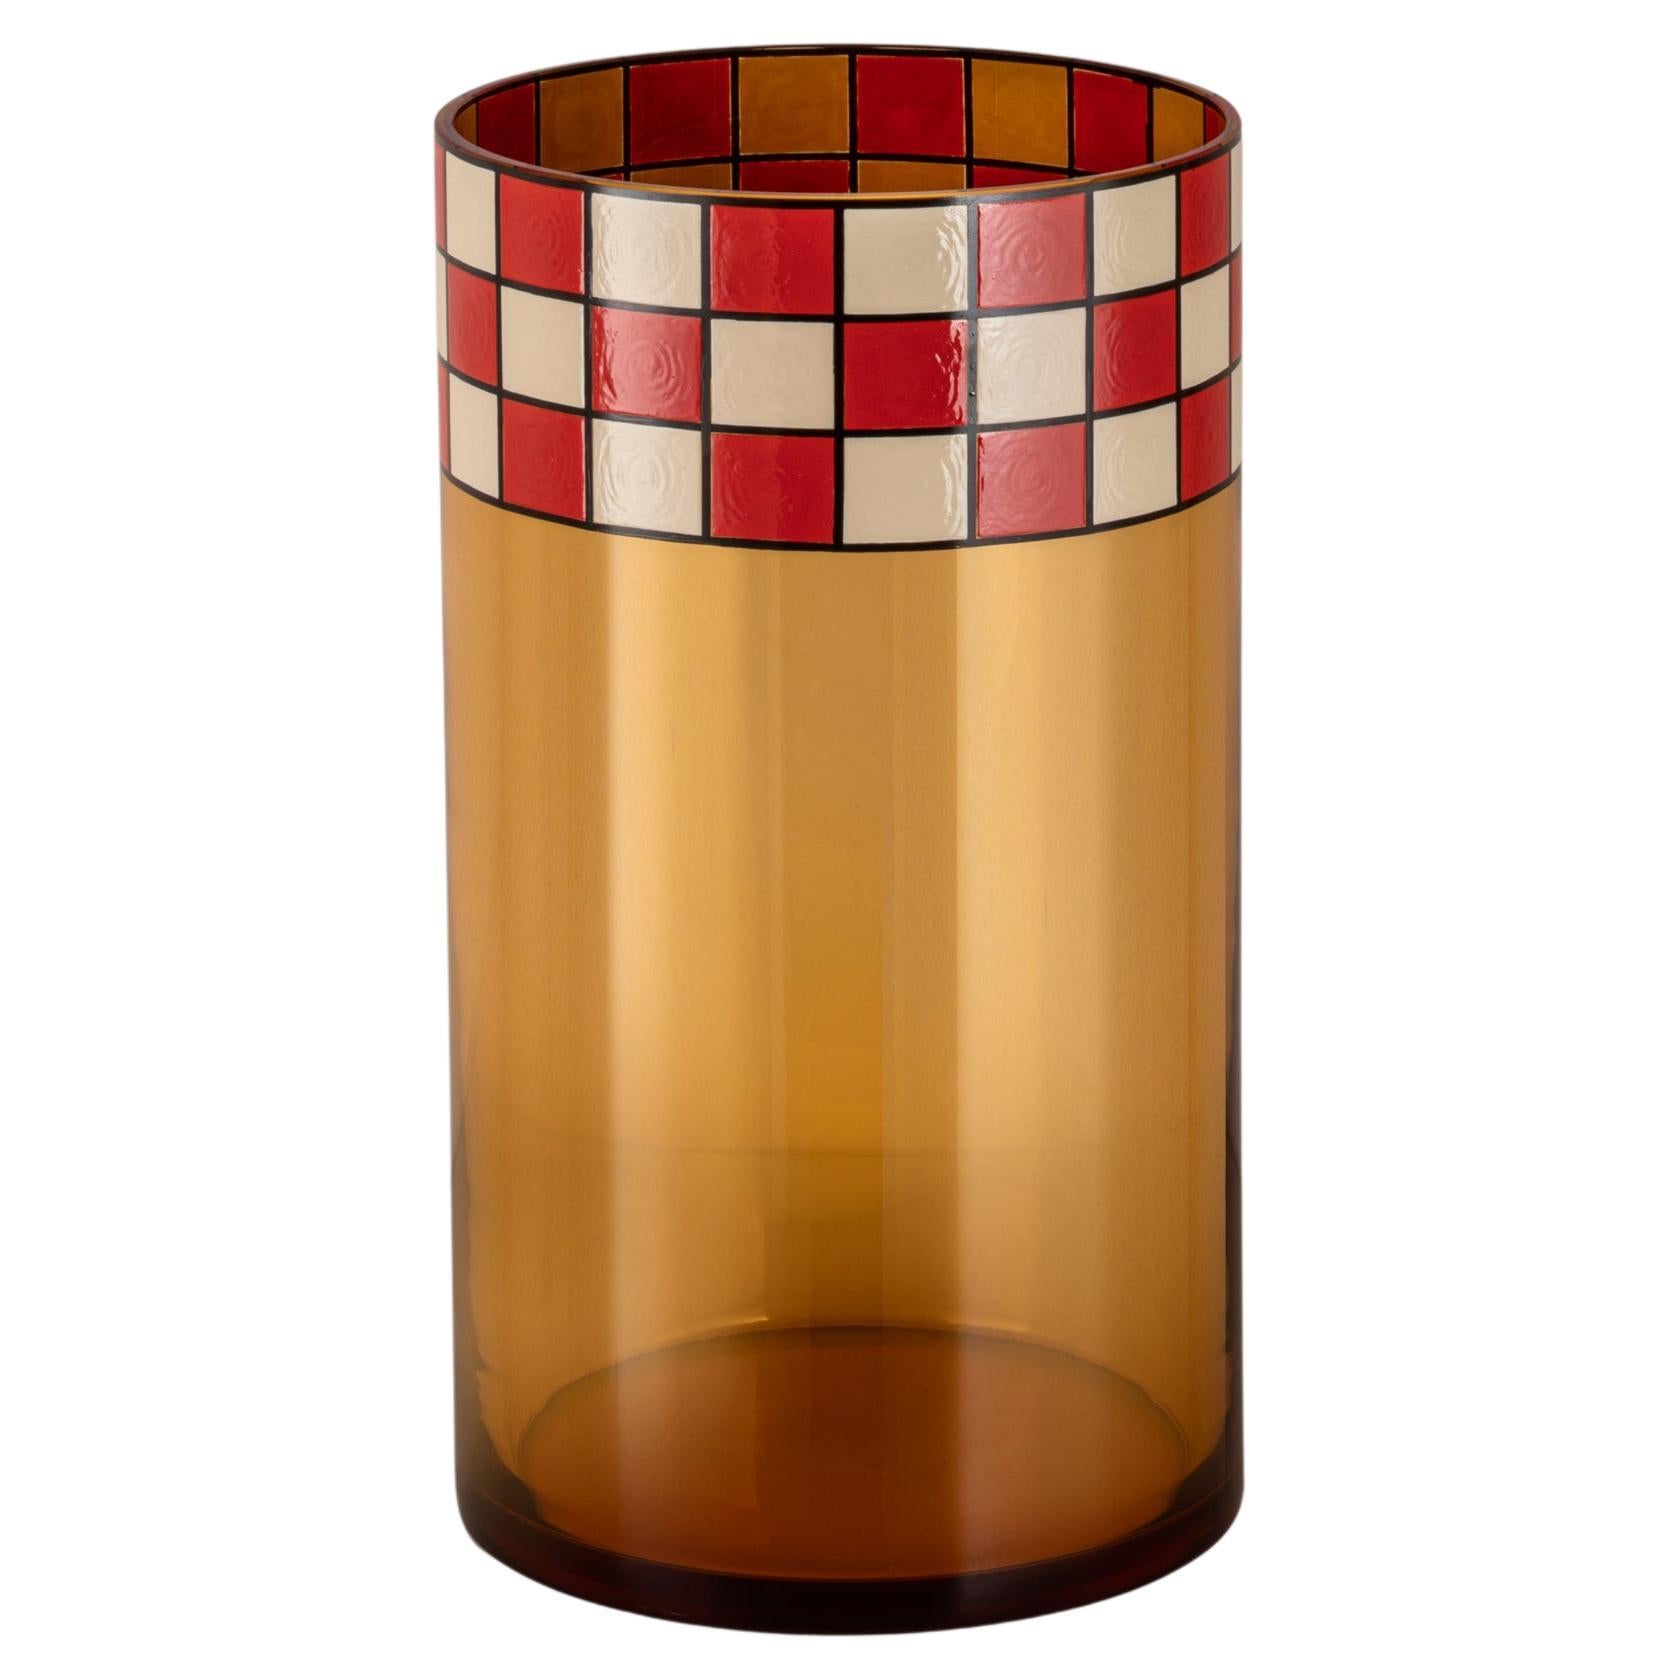 Collezione di vasi in vetro di Murano e smalto, in tre varianti di colore. Il particolare spessore della decorazione a smalto sulla superficie del vetro si ispira a una tecnica francese in voga negli anni '20, che si ritrova in alcuni pezzi iconici